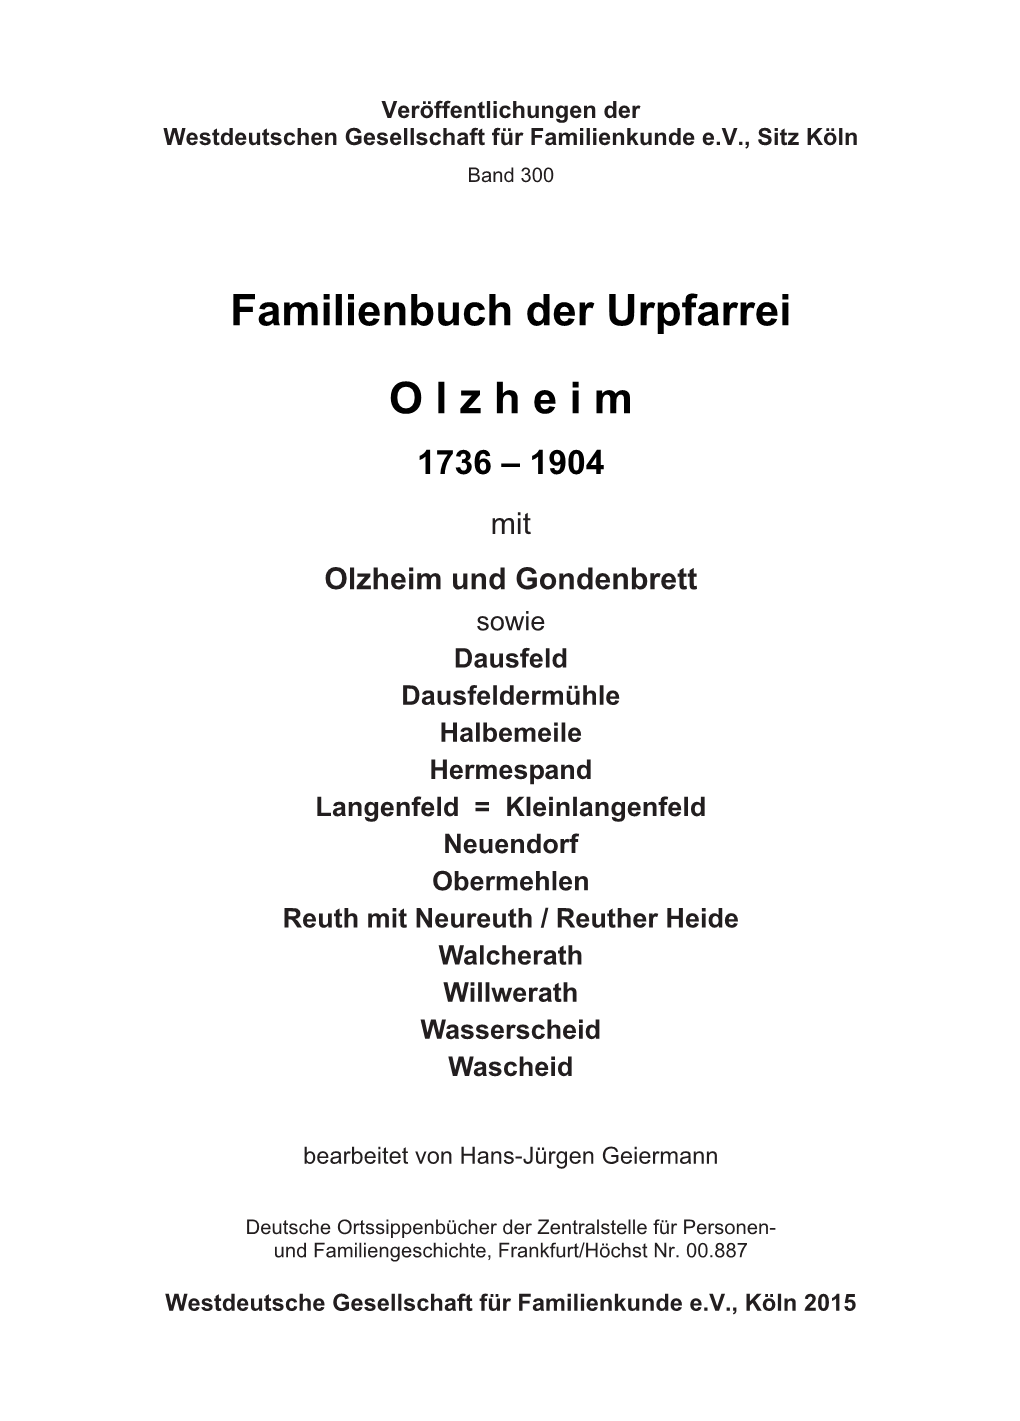 Famileinbuch Der Urpfarrei Olzheim 1736-1904